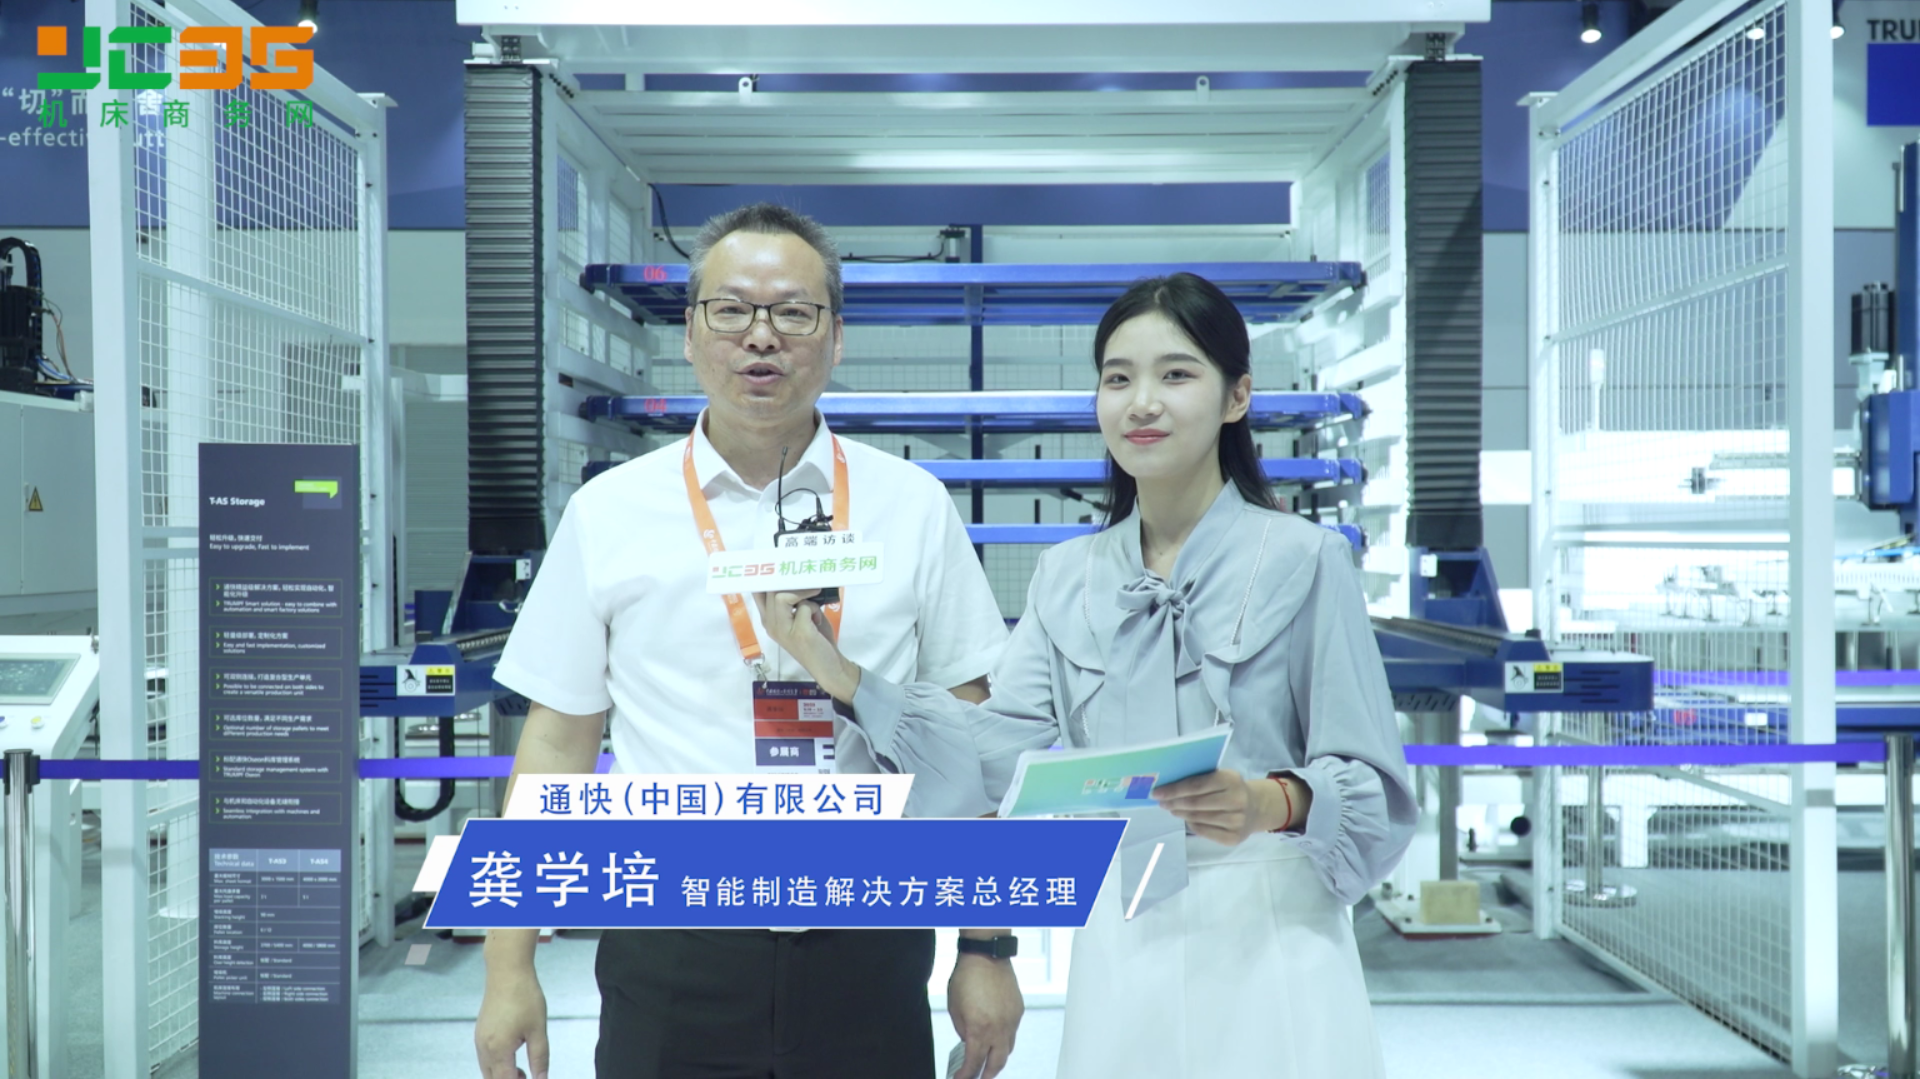 展现激光技术未来 通快亮相中国工博会